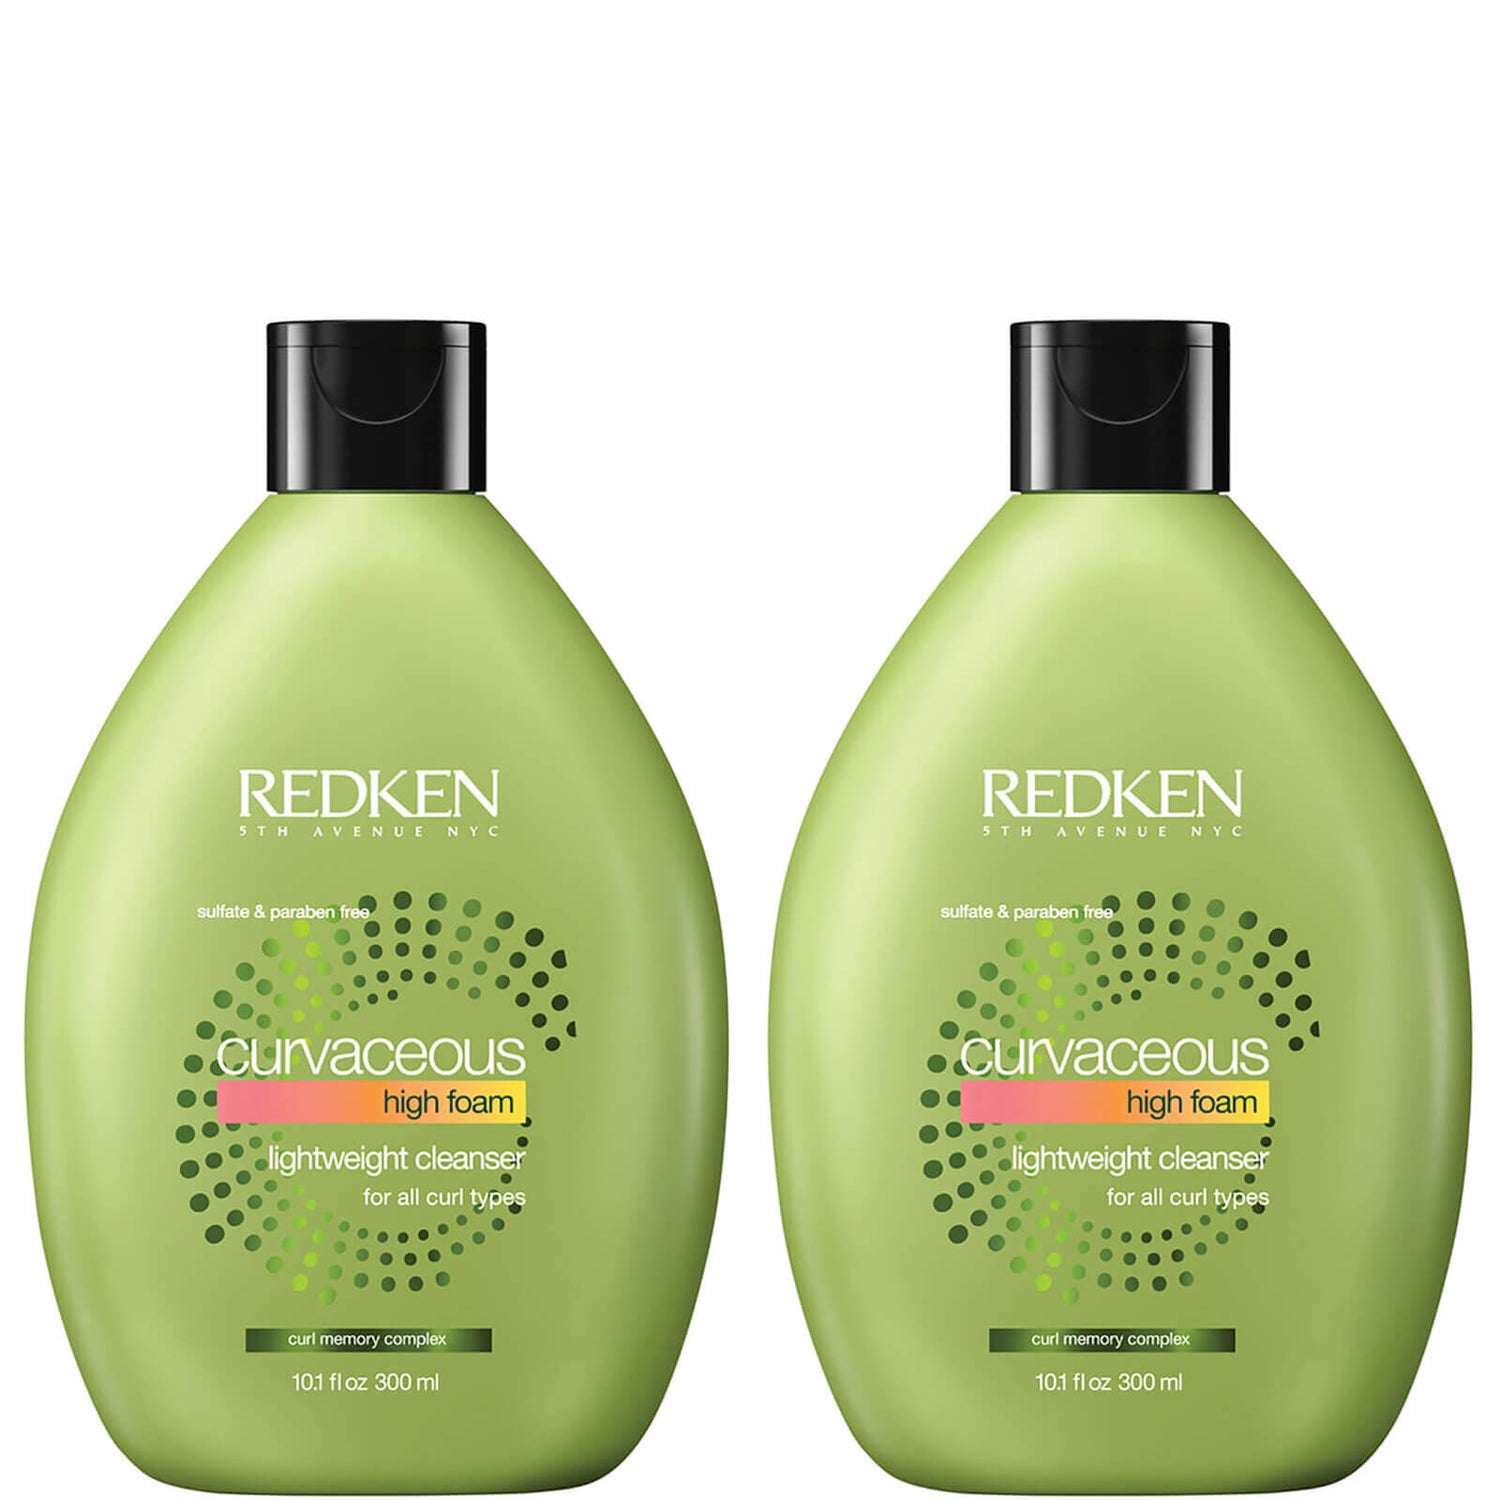 Redken Curvaceous Shampoo Schiuma Intensa Duo (2 x 300 ml)